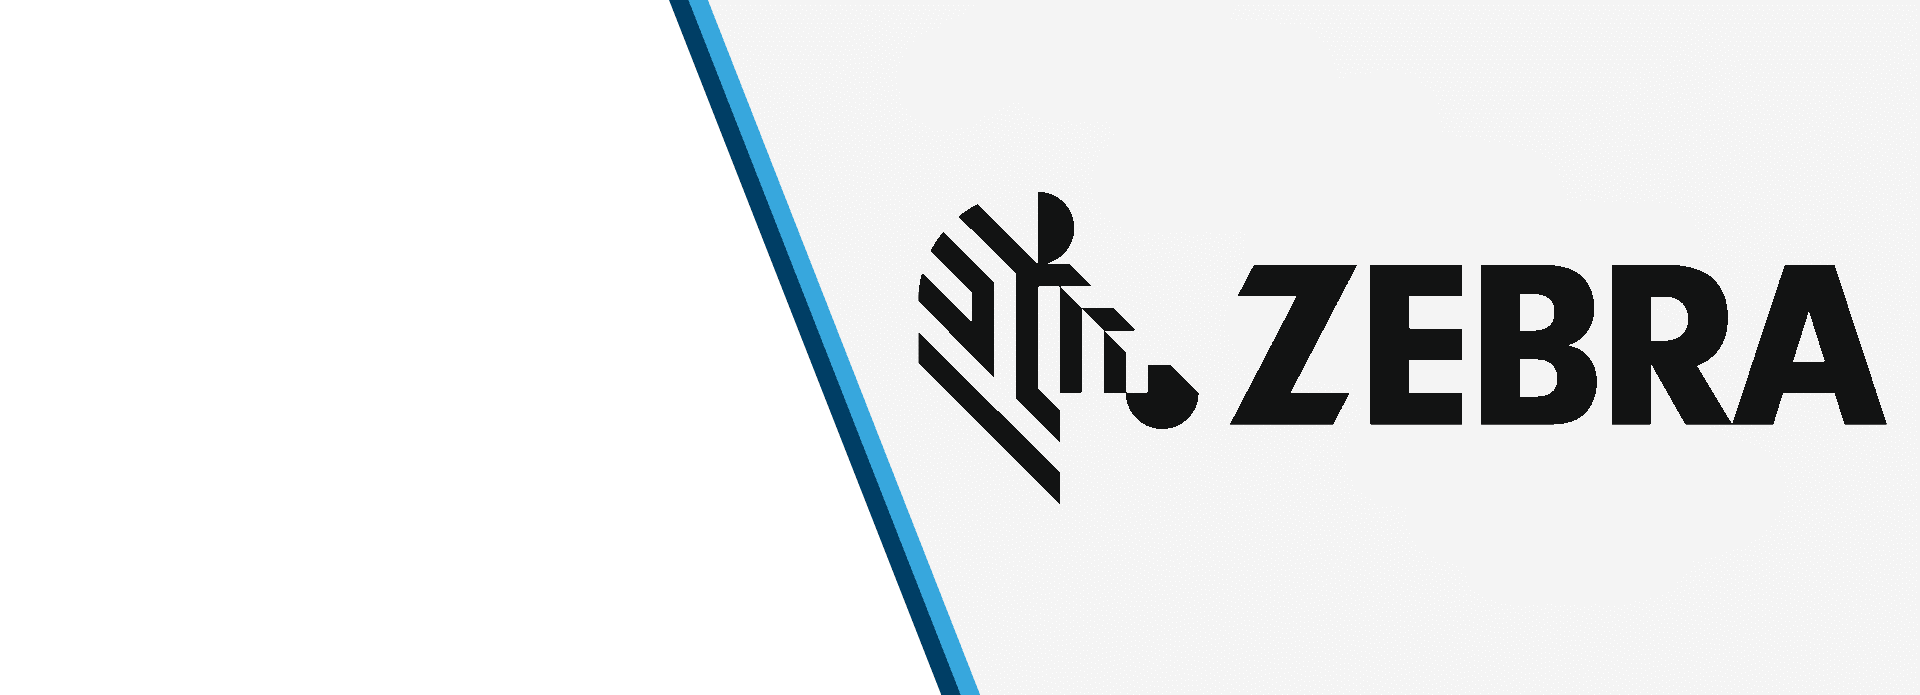 Zebra Printer Logo - Zebra : Zebra Printer Media -